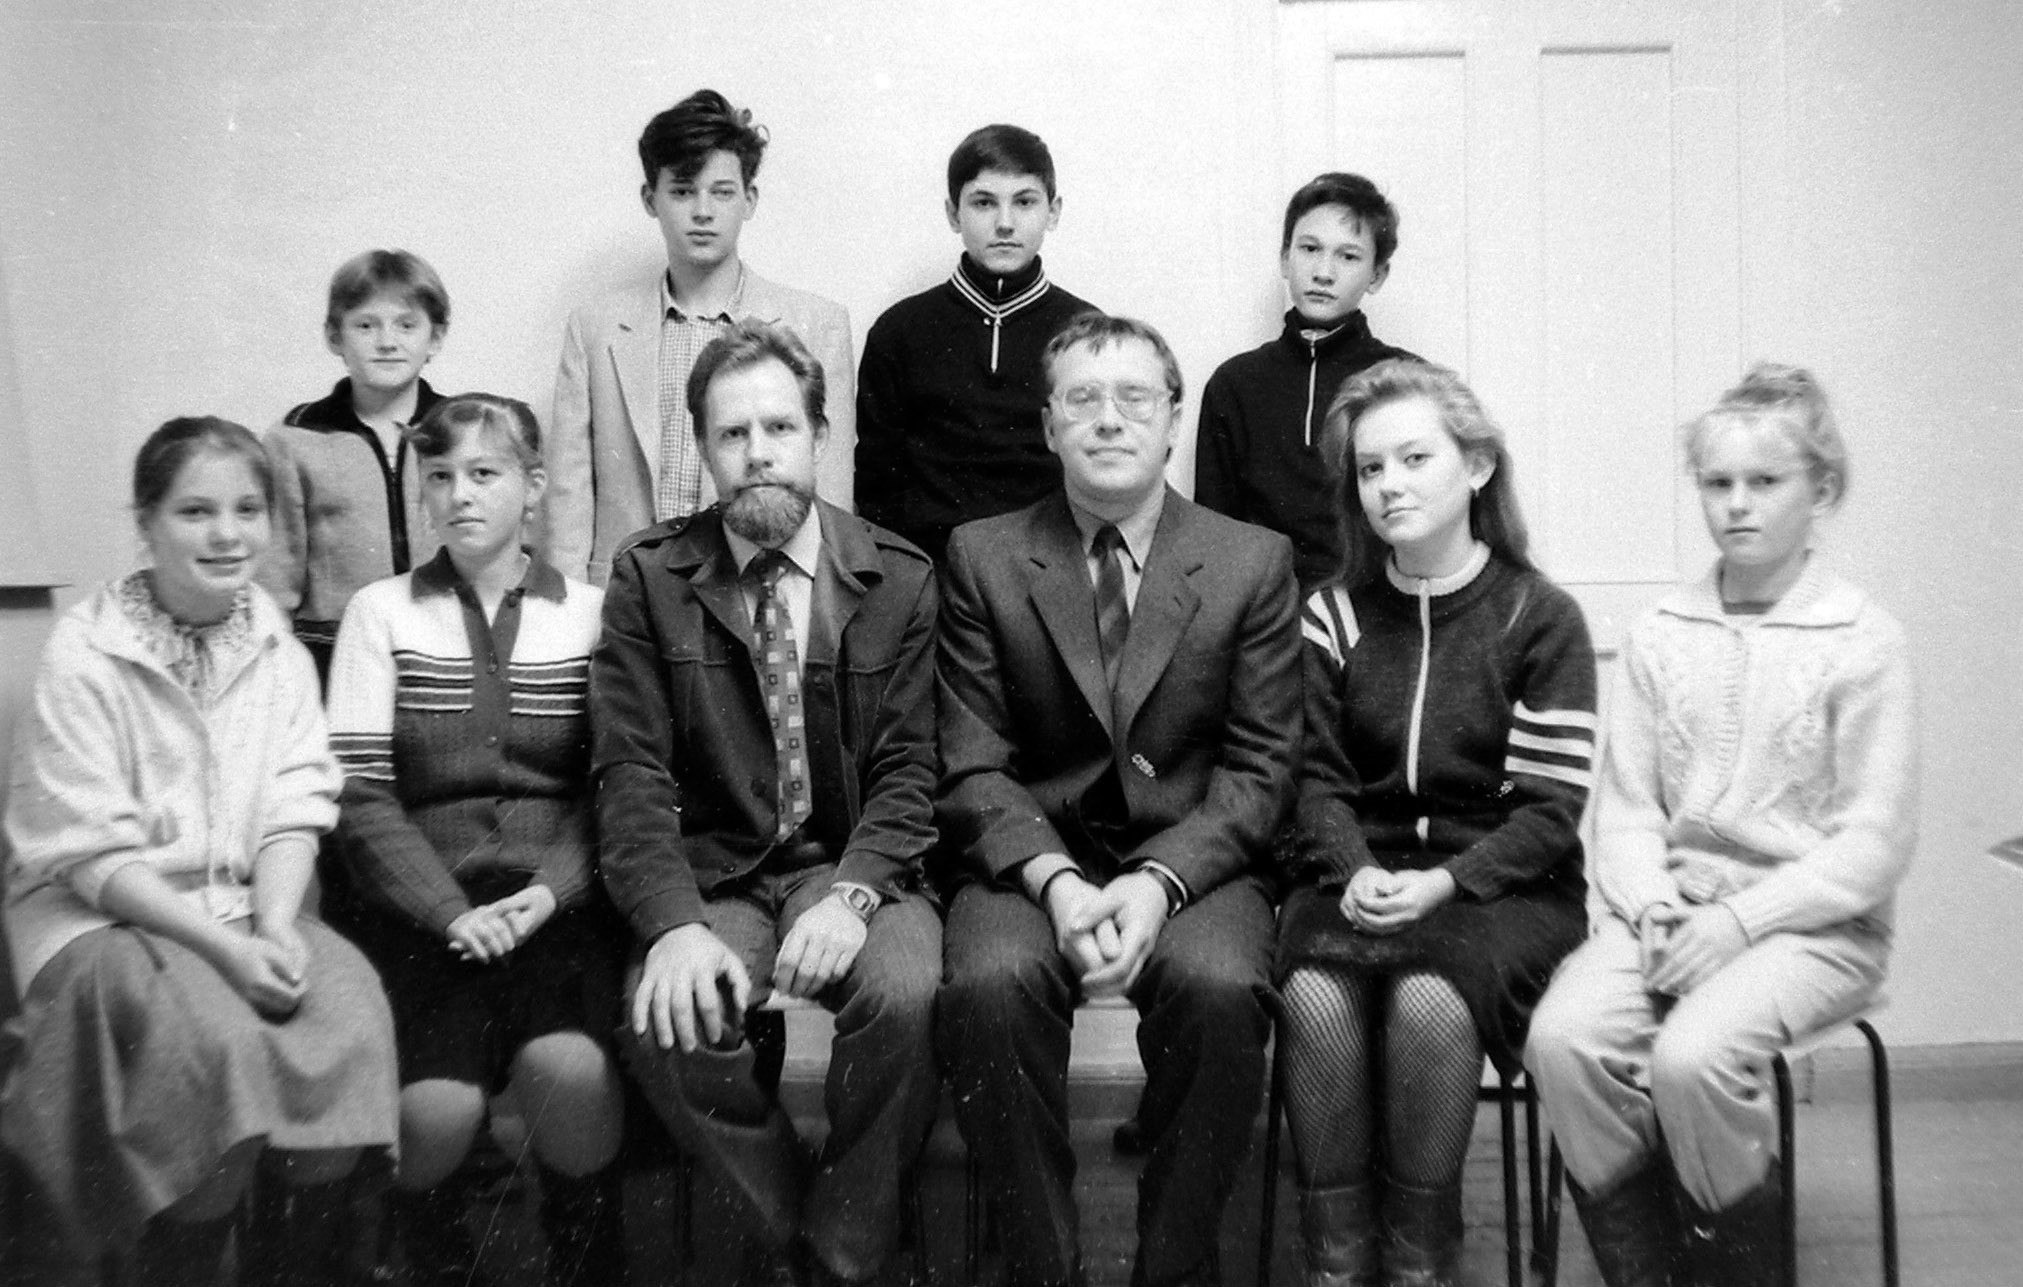 1989 год. Одна из групп первого набора. В центре сидят: слева Ю. Н. Хохлявин, справа В. М. Румянцев